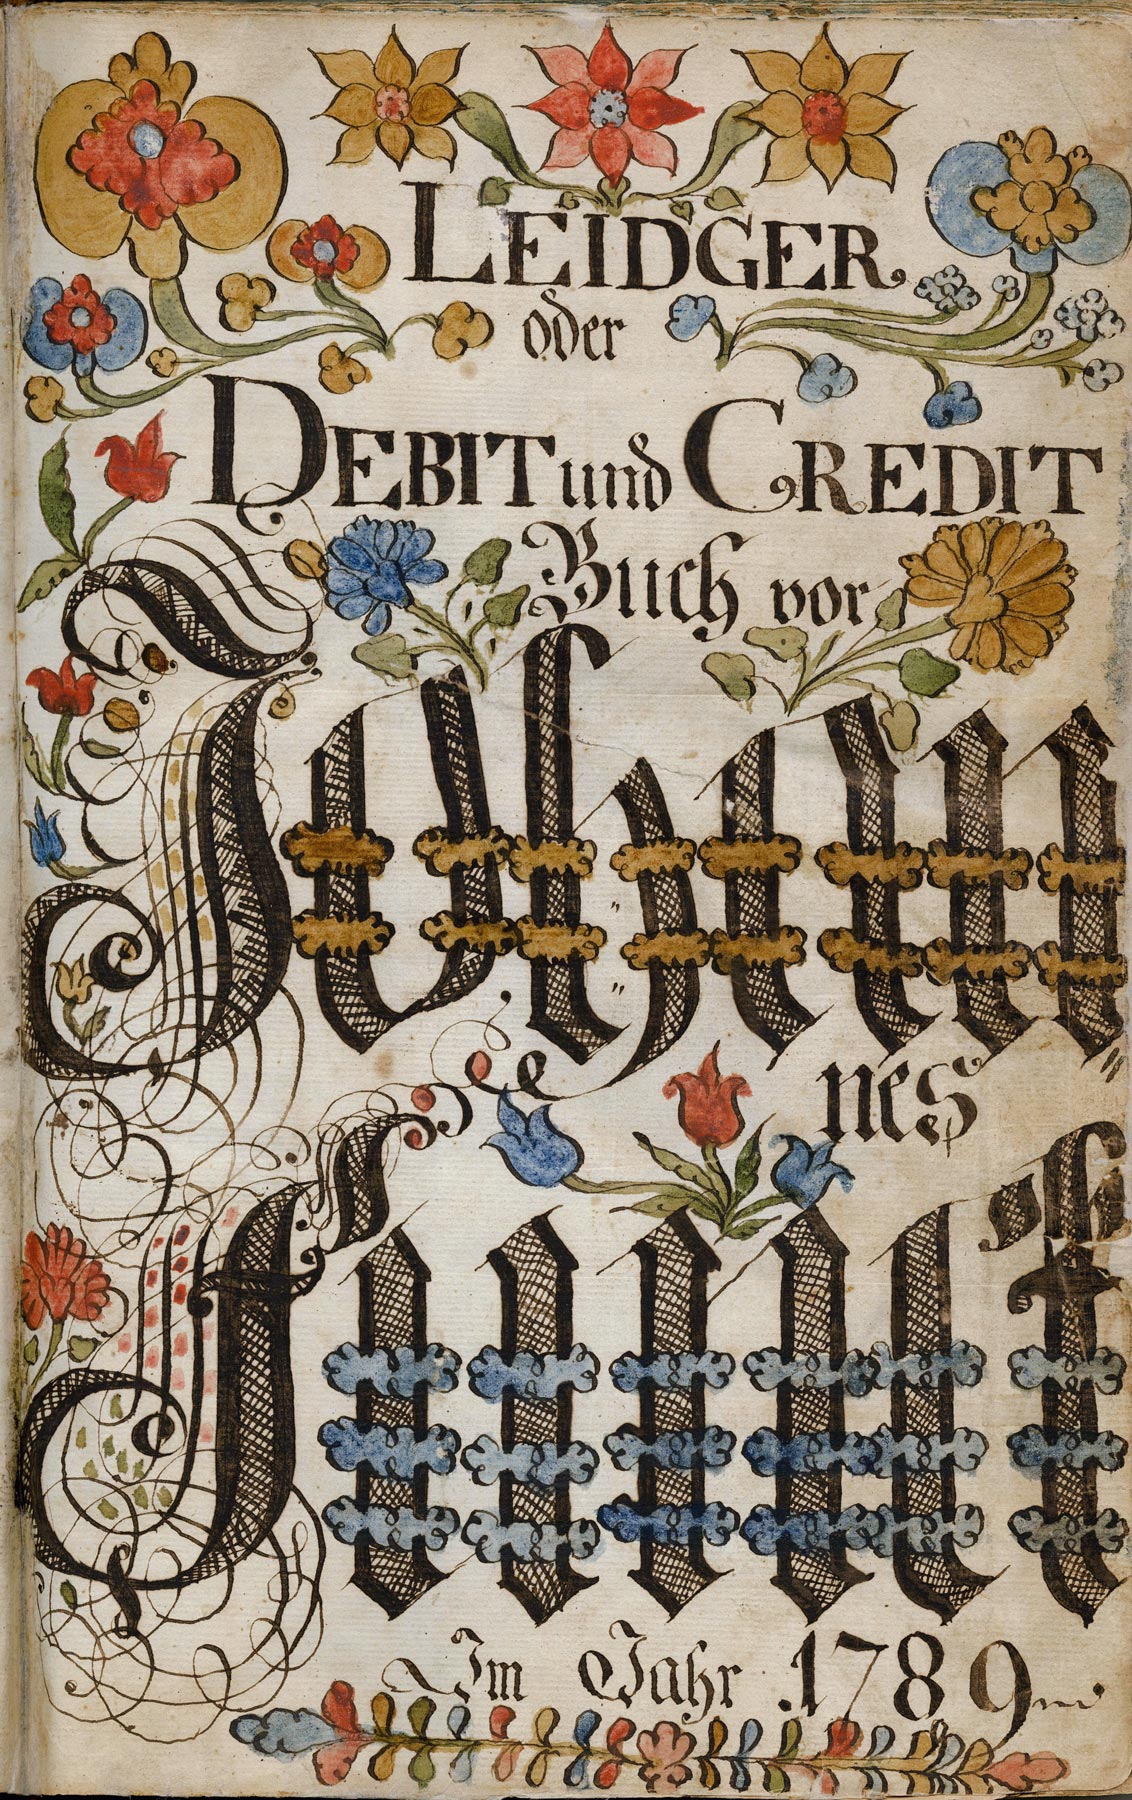 Leidger oder Debit und Credit Buch vor Johannes Funck Im Jahr 1789 attributed to Johannes Ernst Spangenberg (c. 1755-1814), 1789